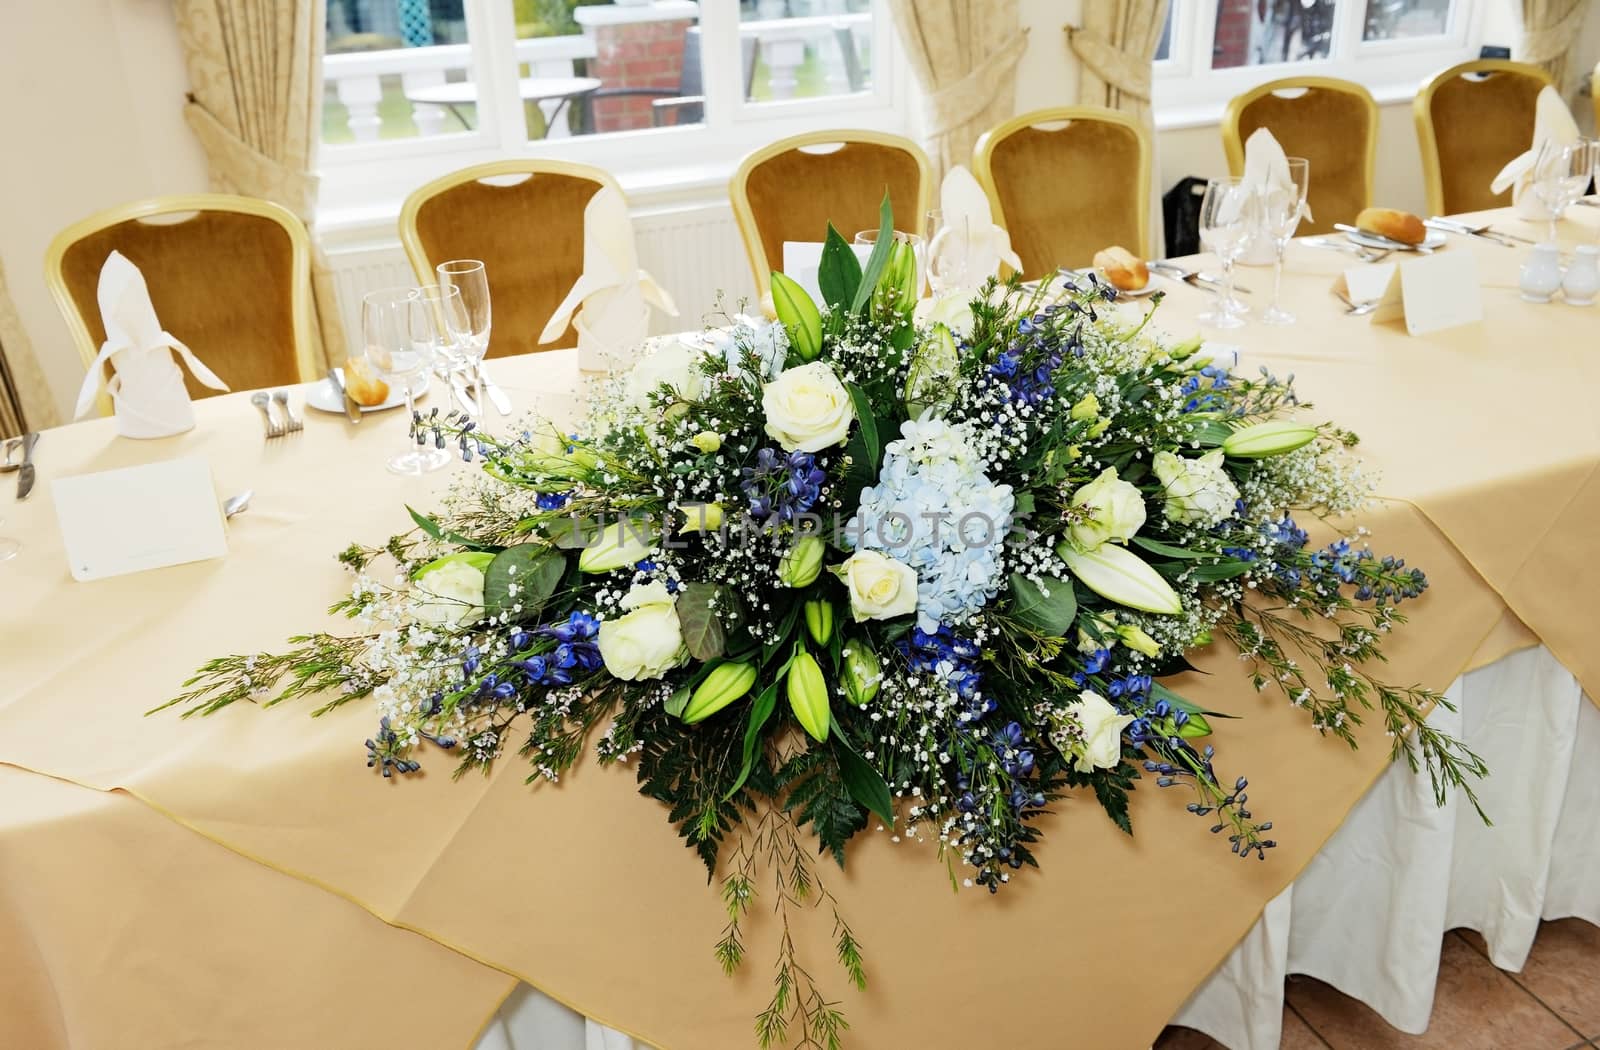 Closeup detail of flower arrangement at wedding reception